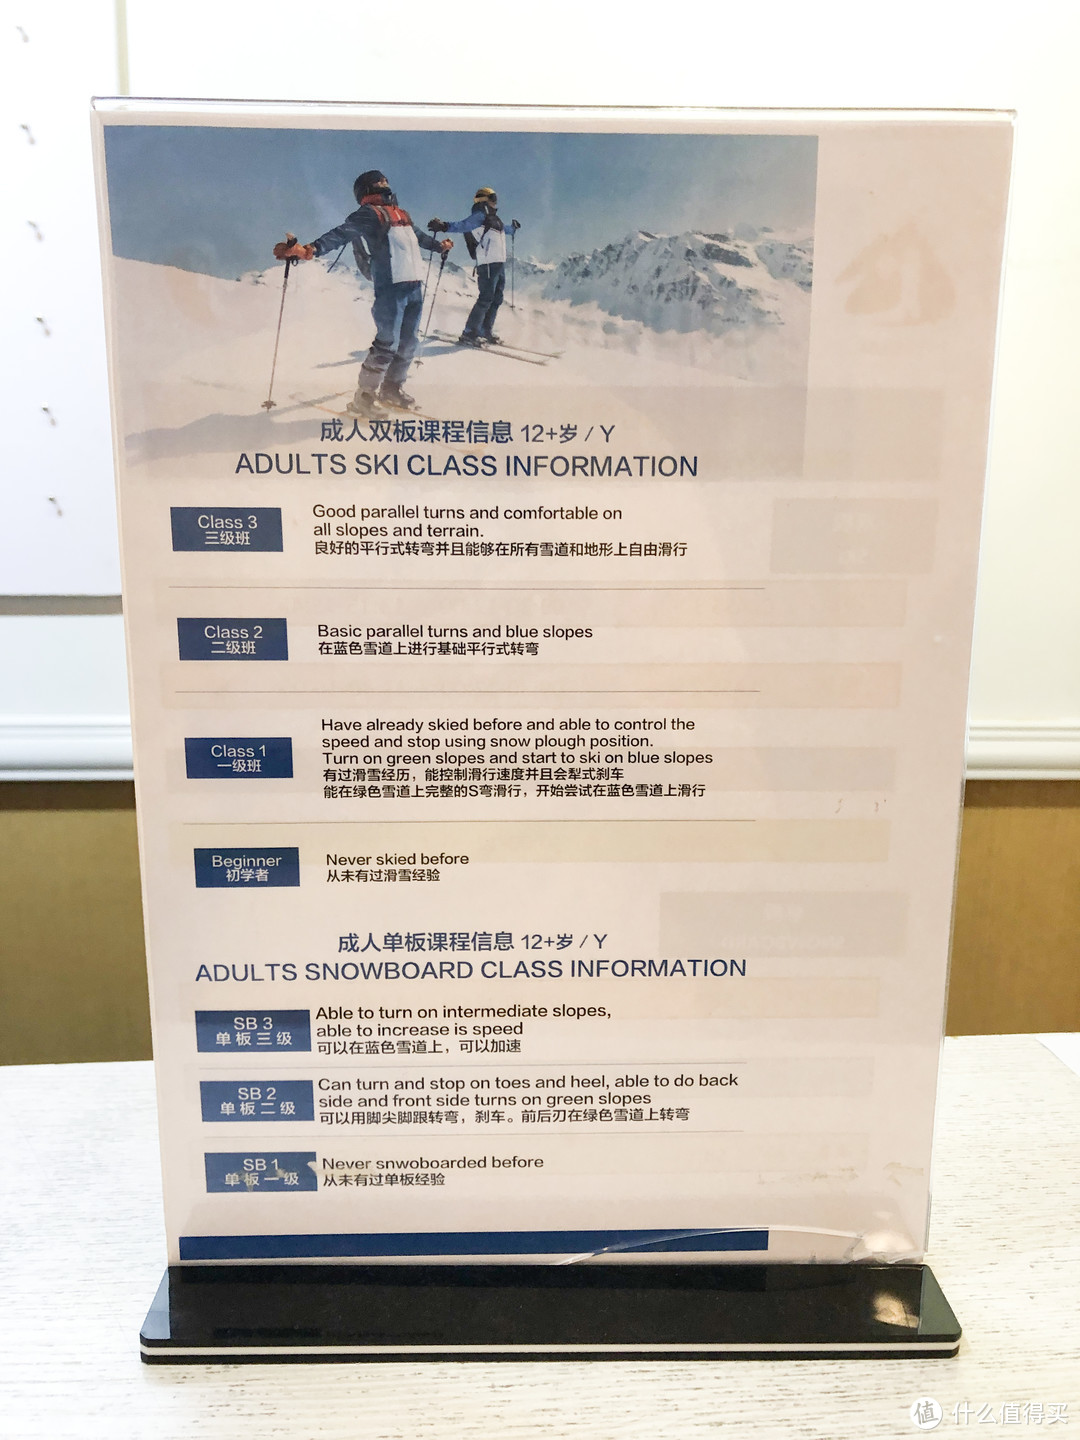 20-21年雪季|亚布力Club Med滑雪度假村行动指南